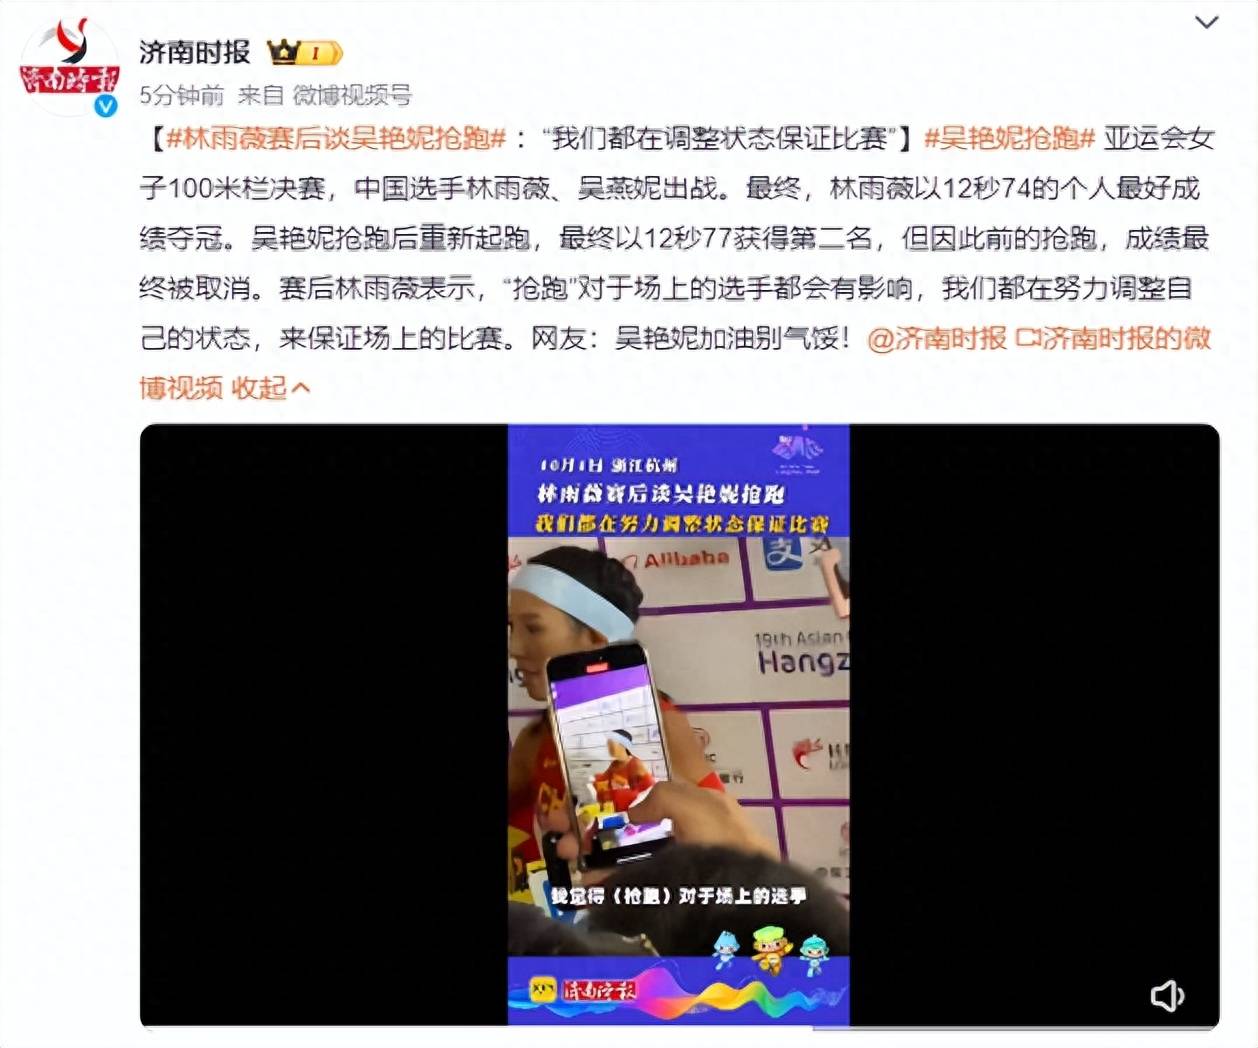 科学网—赞裁判组最终决定吴艳妮抢跑被取消成绩 - 黄安年的博文